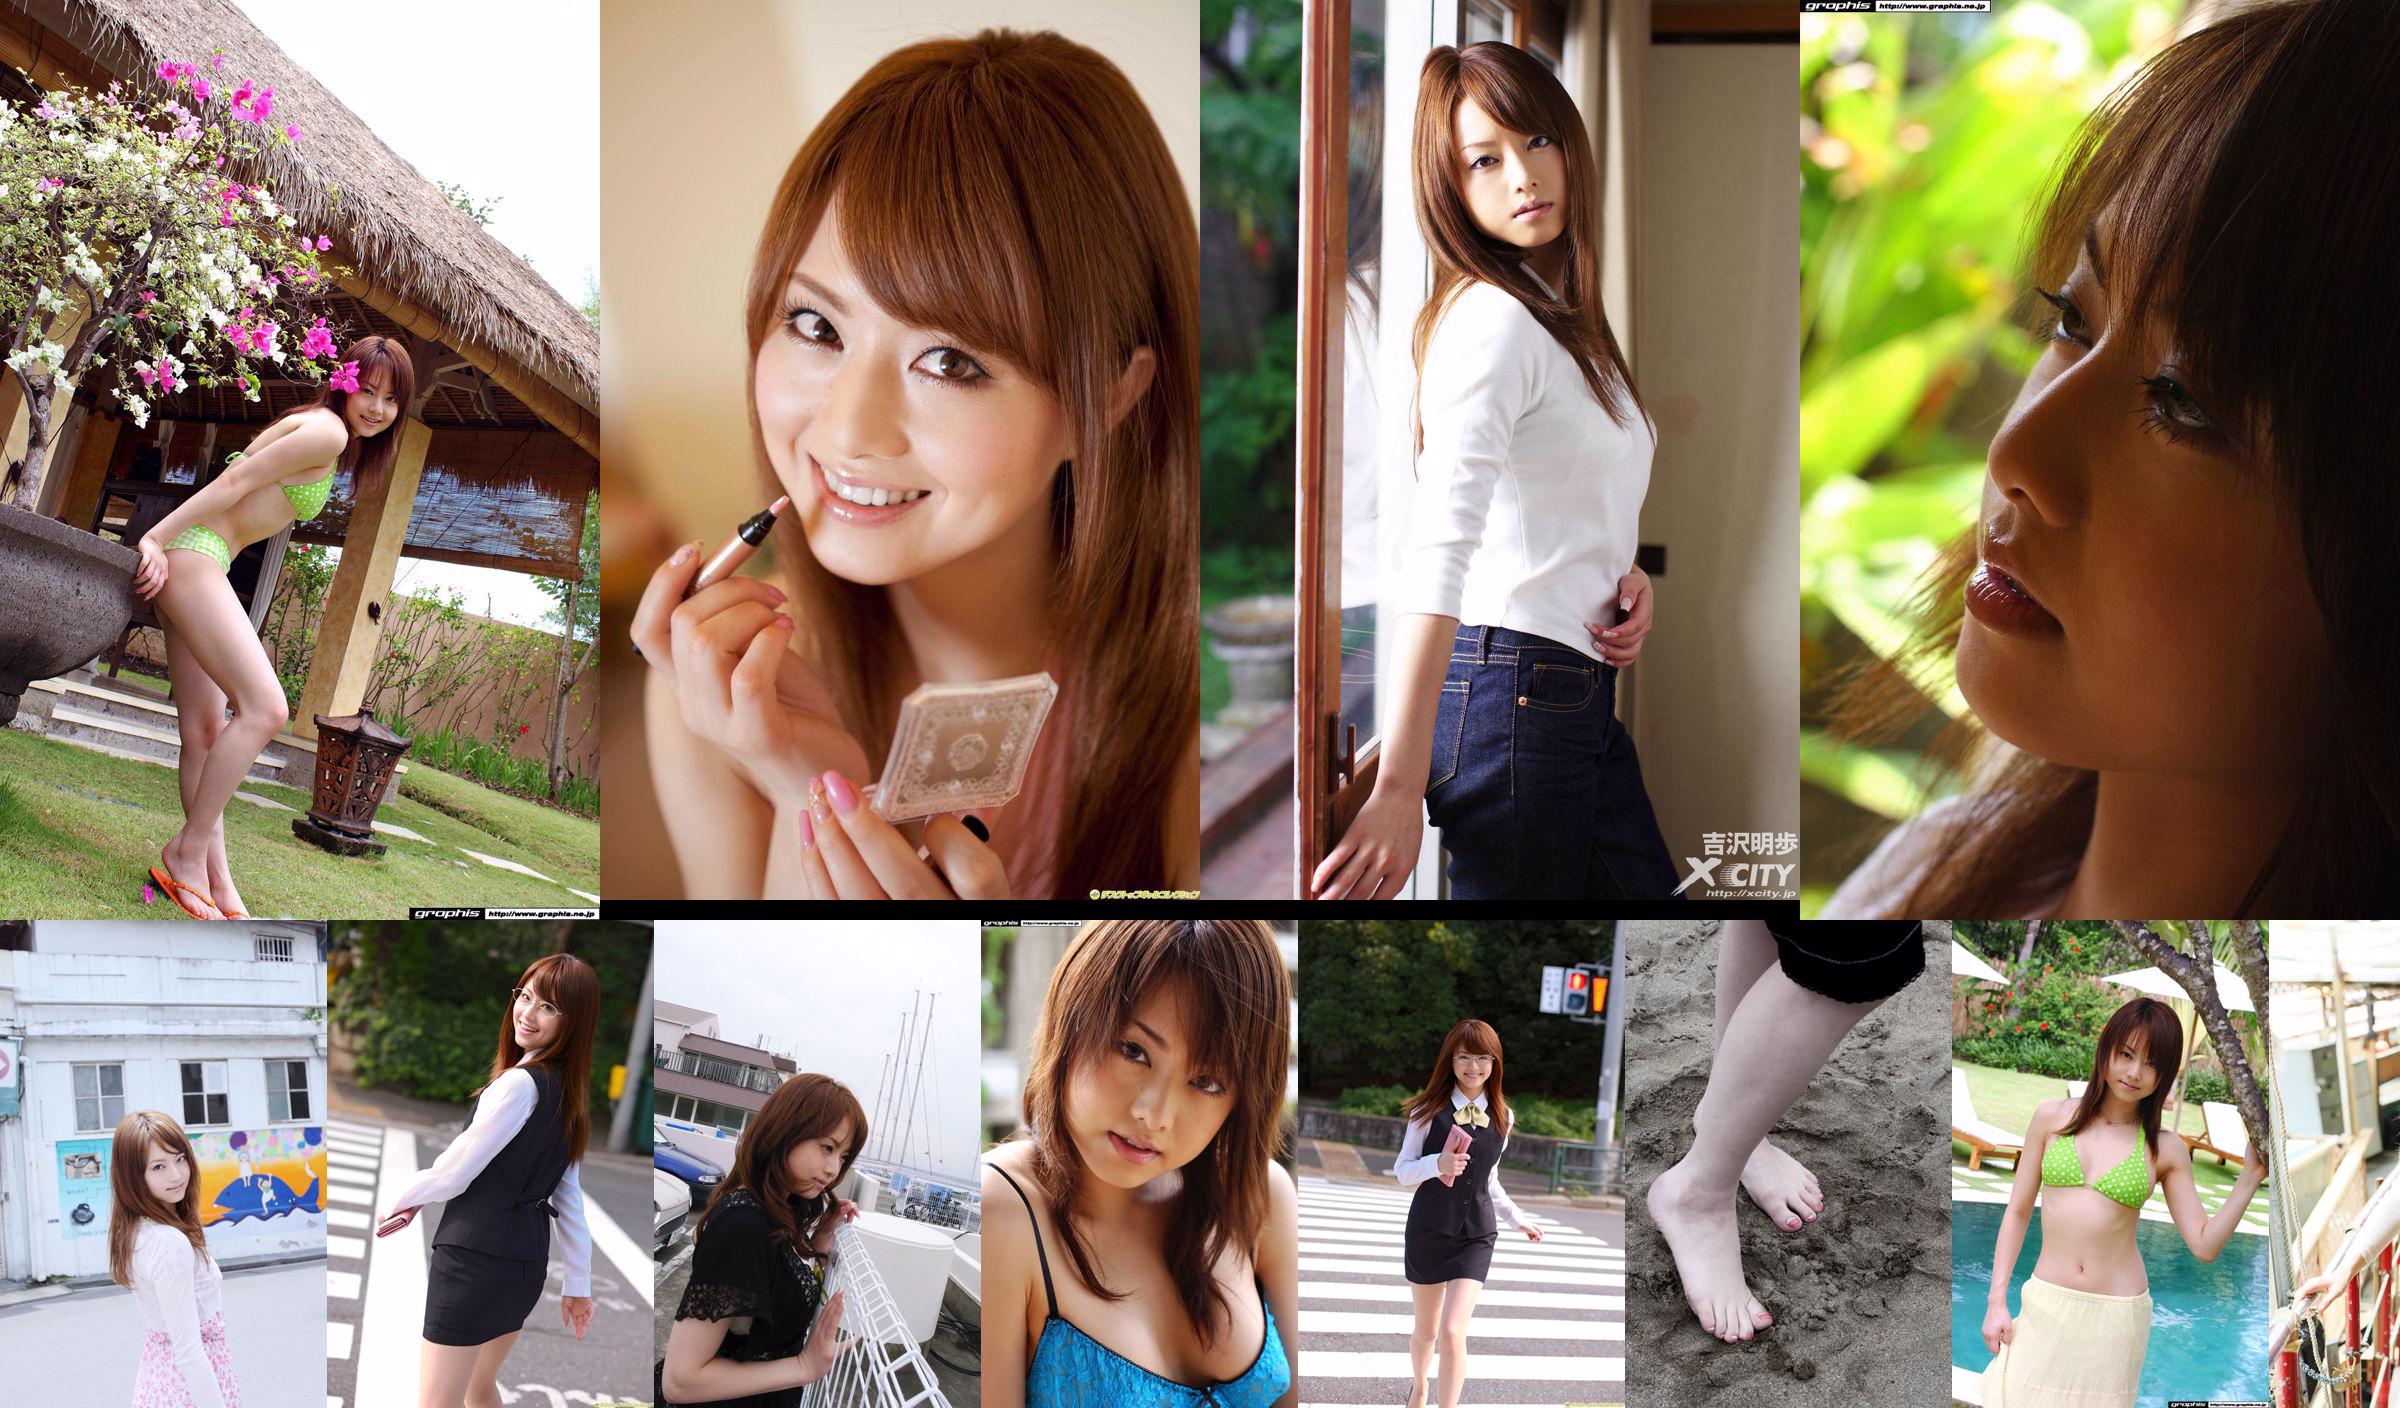 [X-City] WEB Nr. 072 Akiho Yoshizawa "LADY SUPREME" No.09ad26 Seite 1